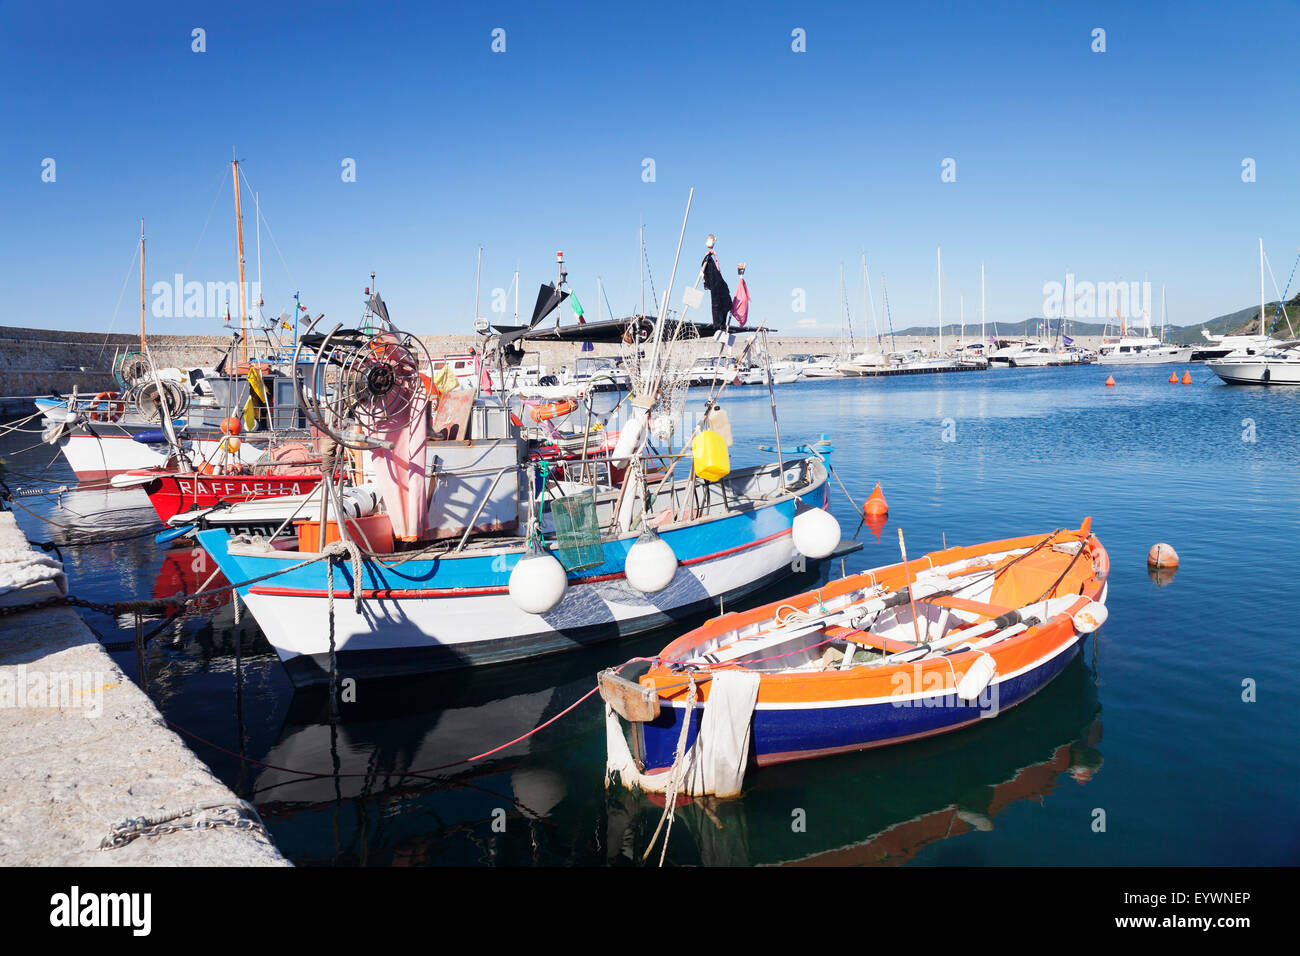 Port of Marciana Marina with fishing boats, Marciana marina, Island of Elba, Livorno Province, Tuscany, Italy, Mediterranean Stock Photo